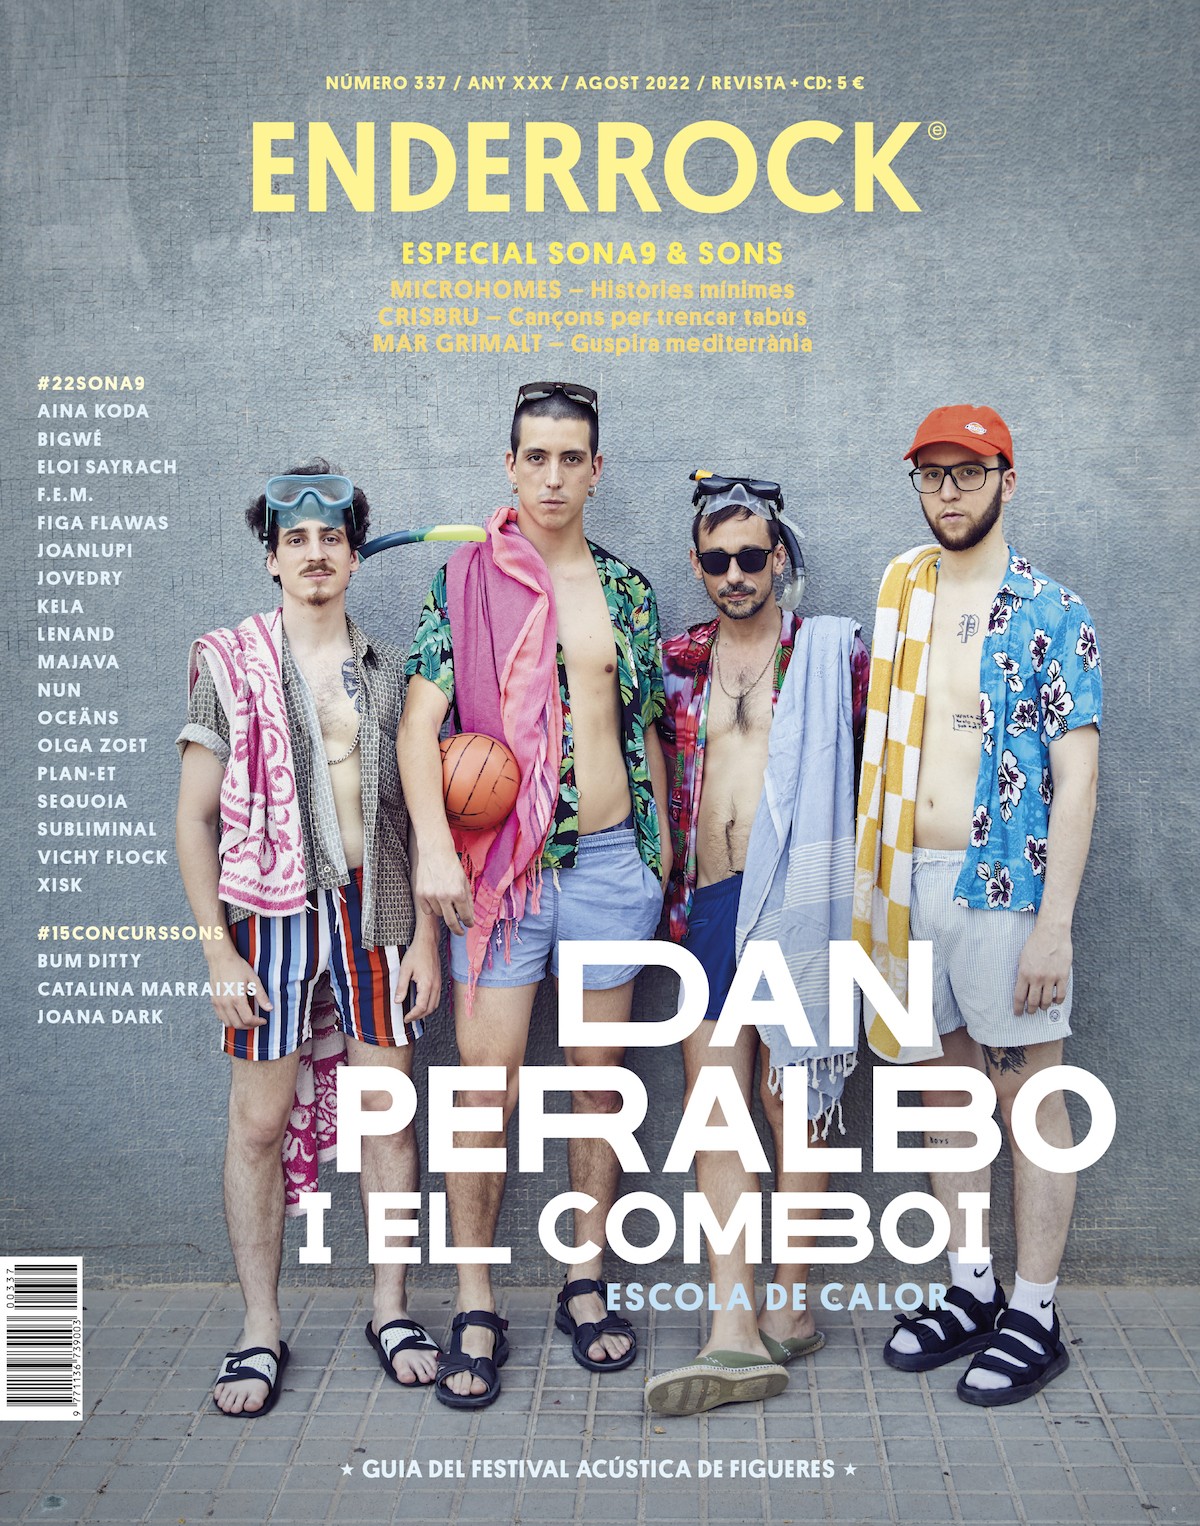 La portada de l'Enderrock 337